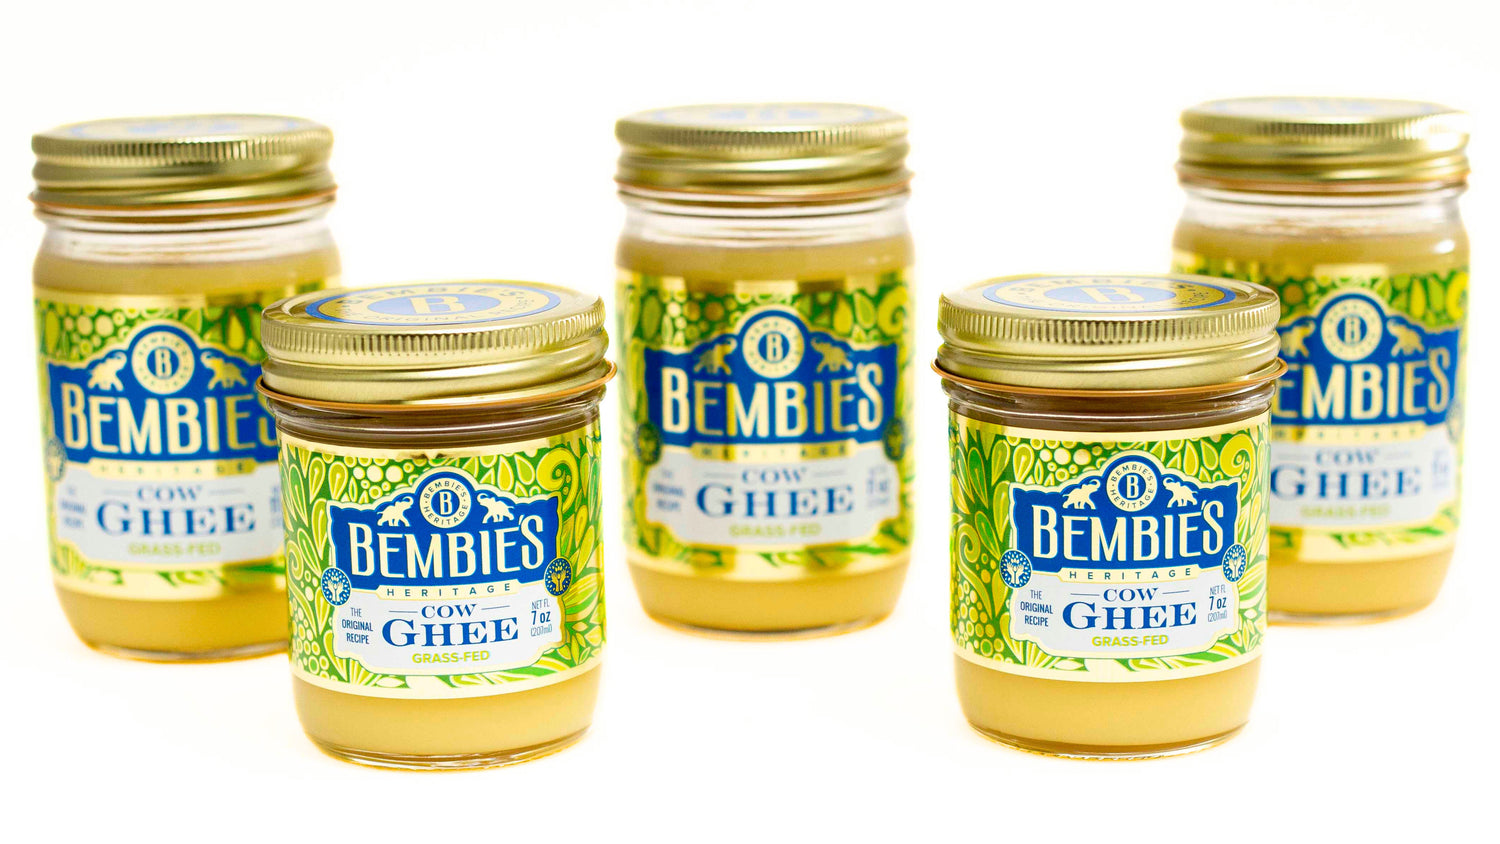 Bembie's Ghee 11 ounces jar and 7 ounces jar.